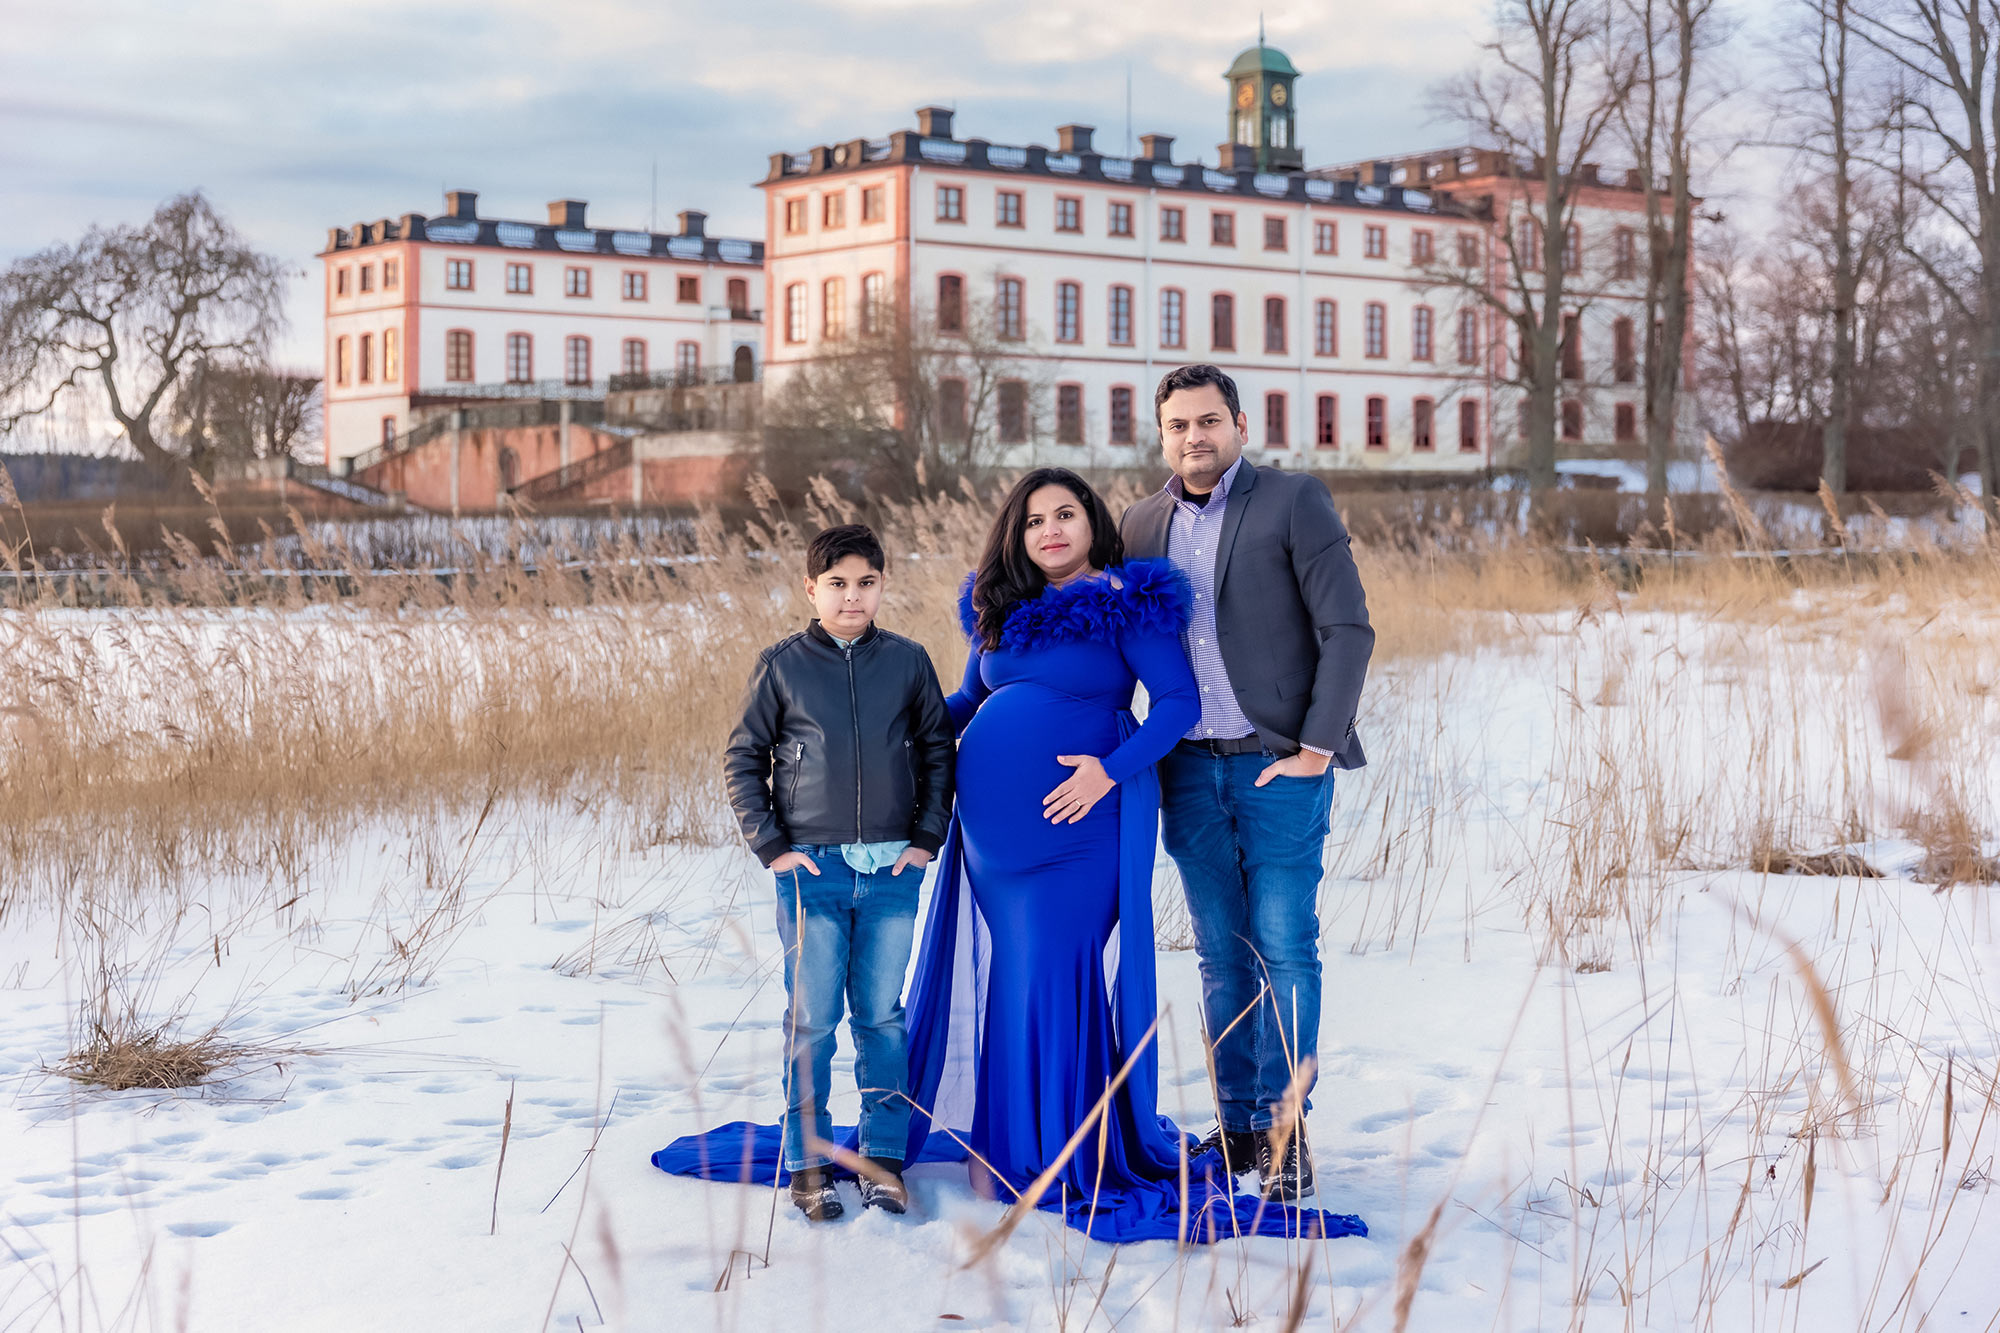 Gravidfotografering med familj framför Tullgarns Slott. Snön ligger tjock på marken och bakom familjen syns slottet.